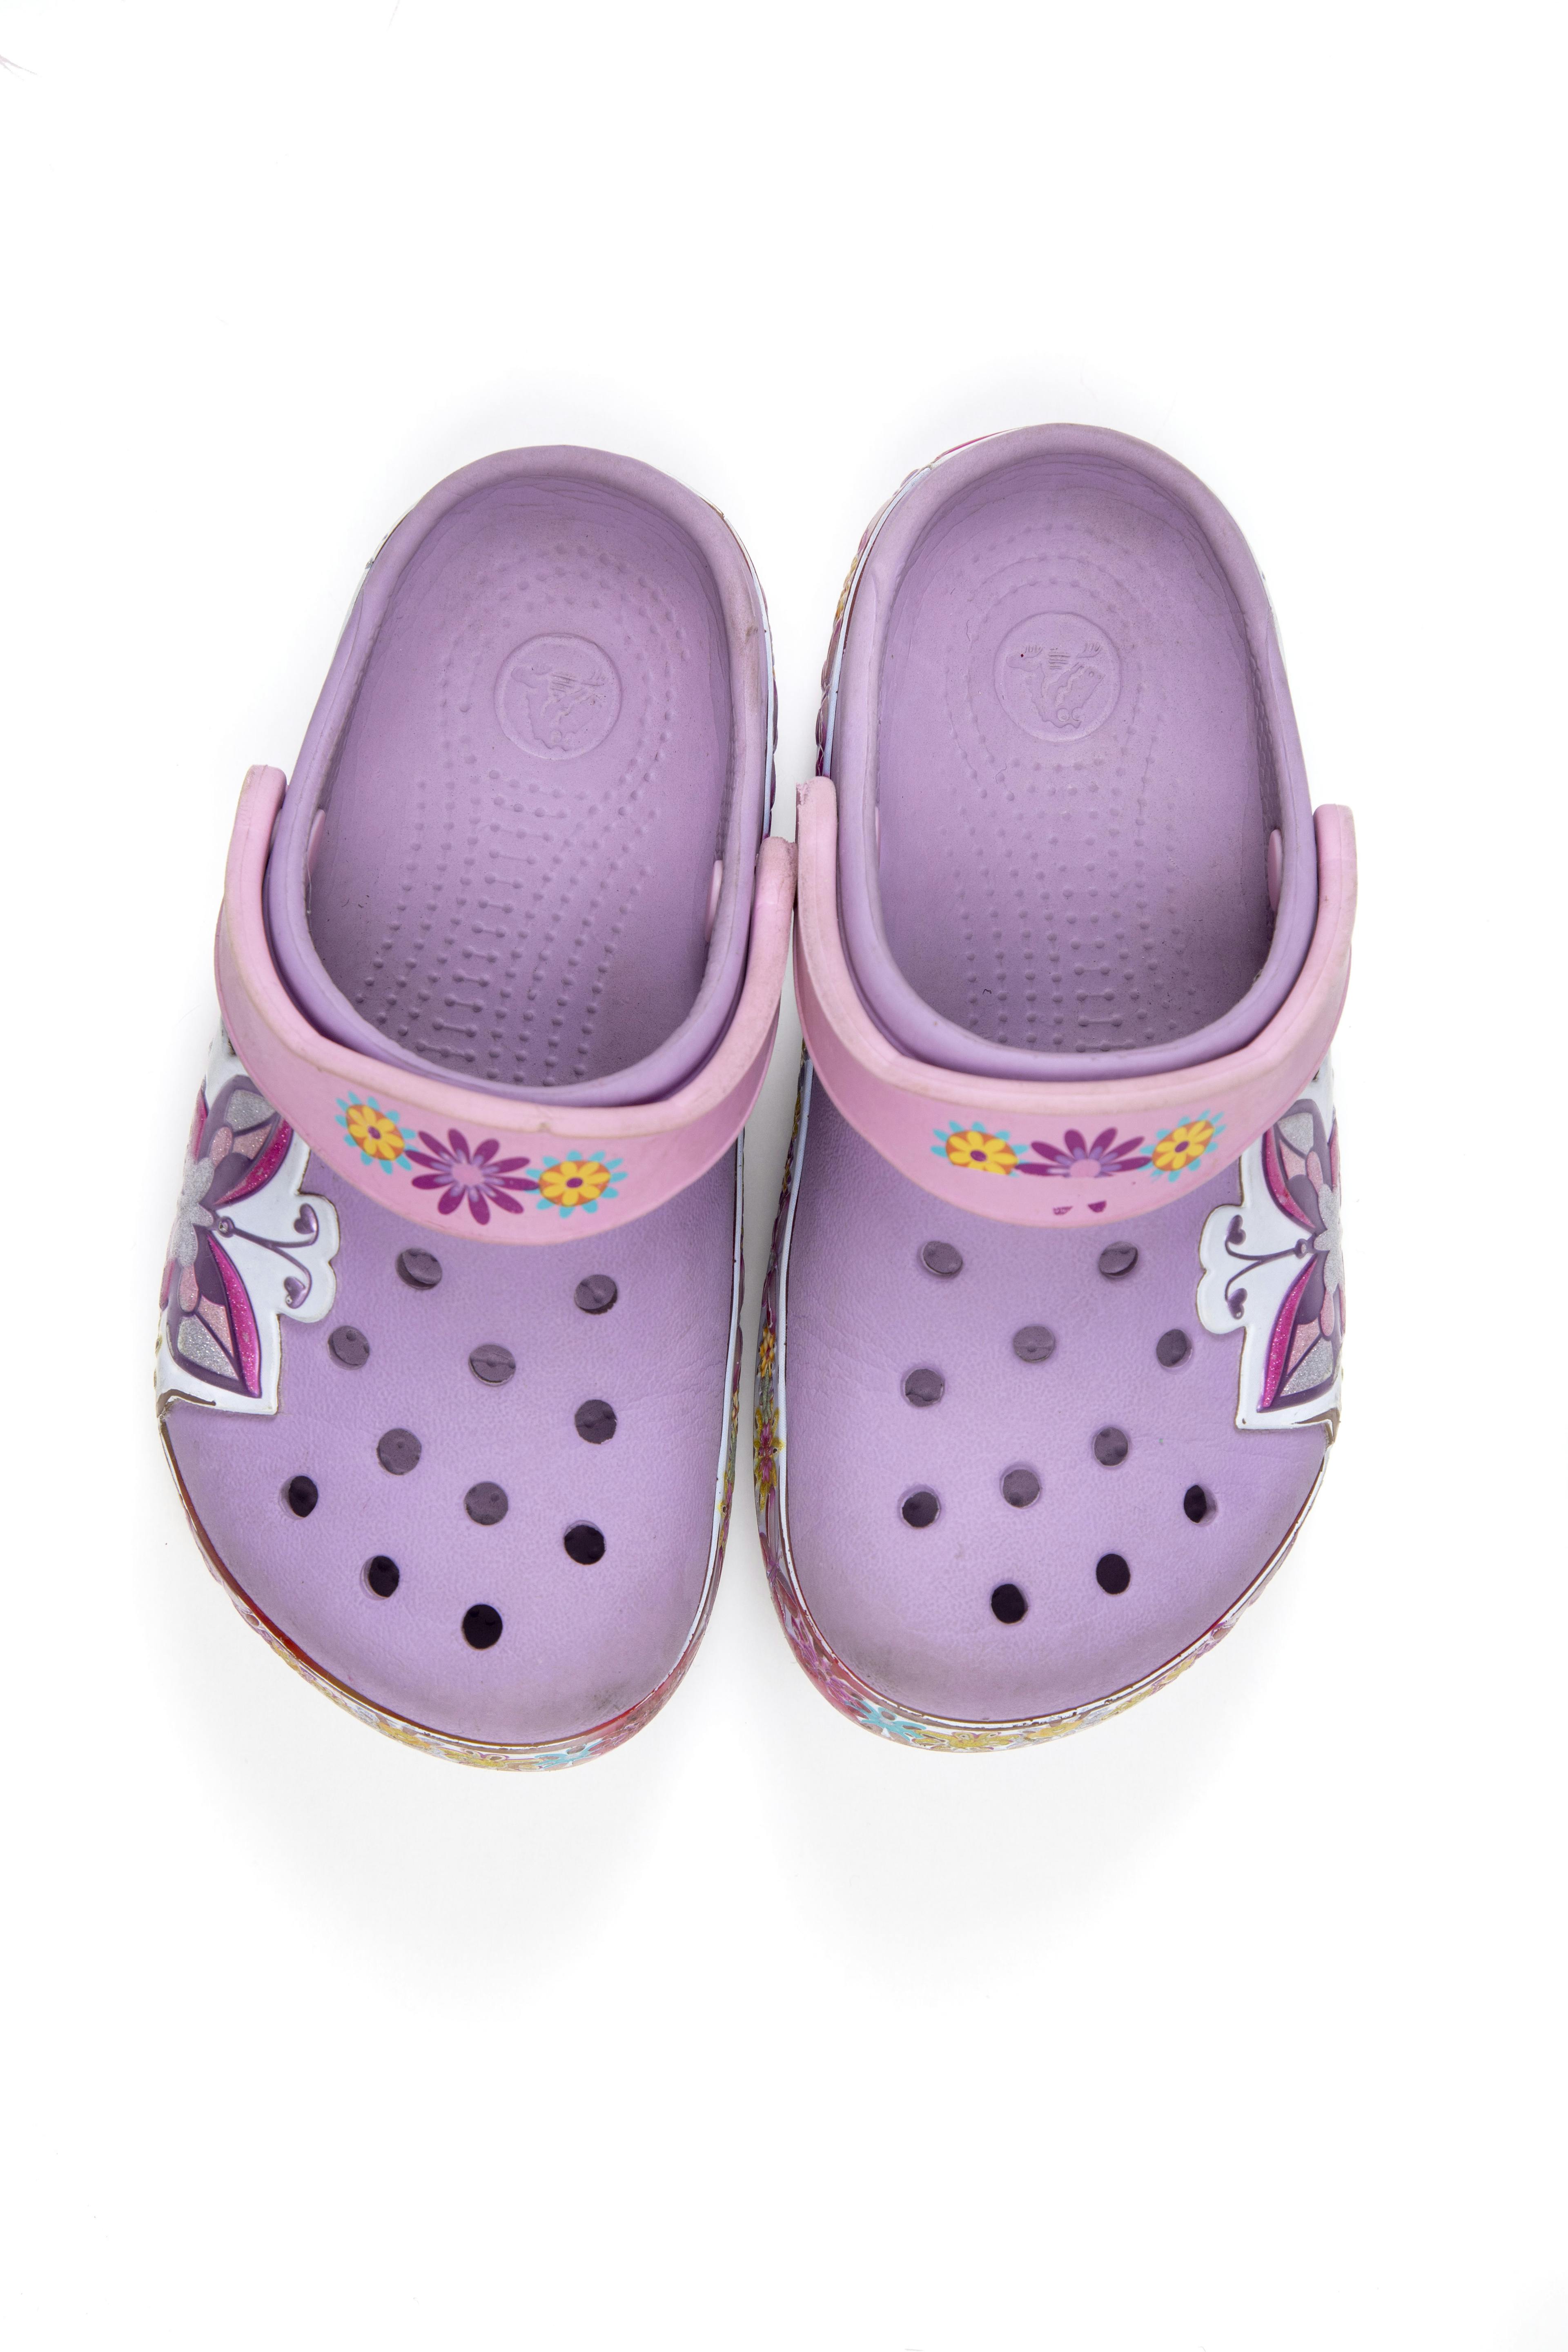 Crocs lilas con flores. Talla 10 - 11 americana - Crocs